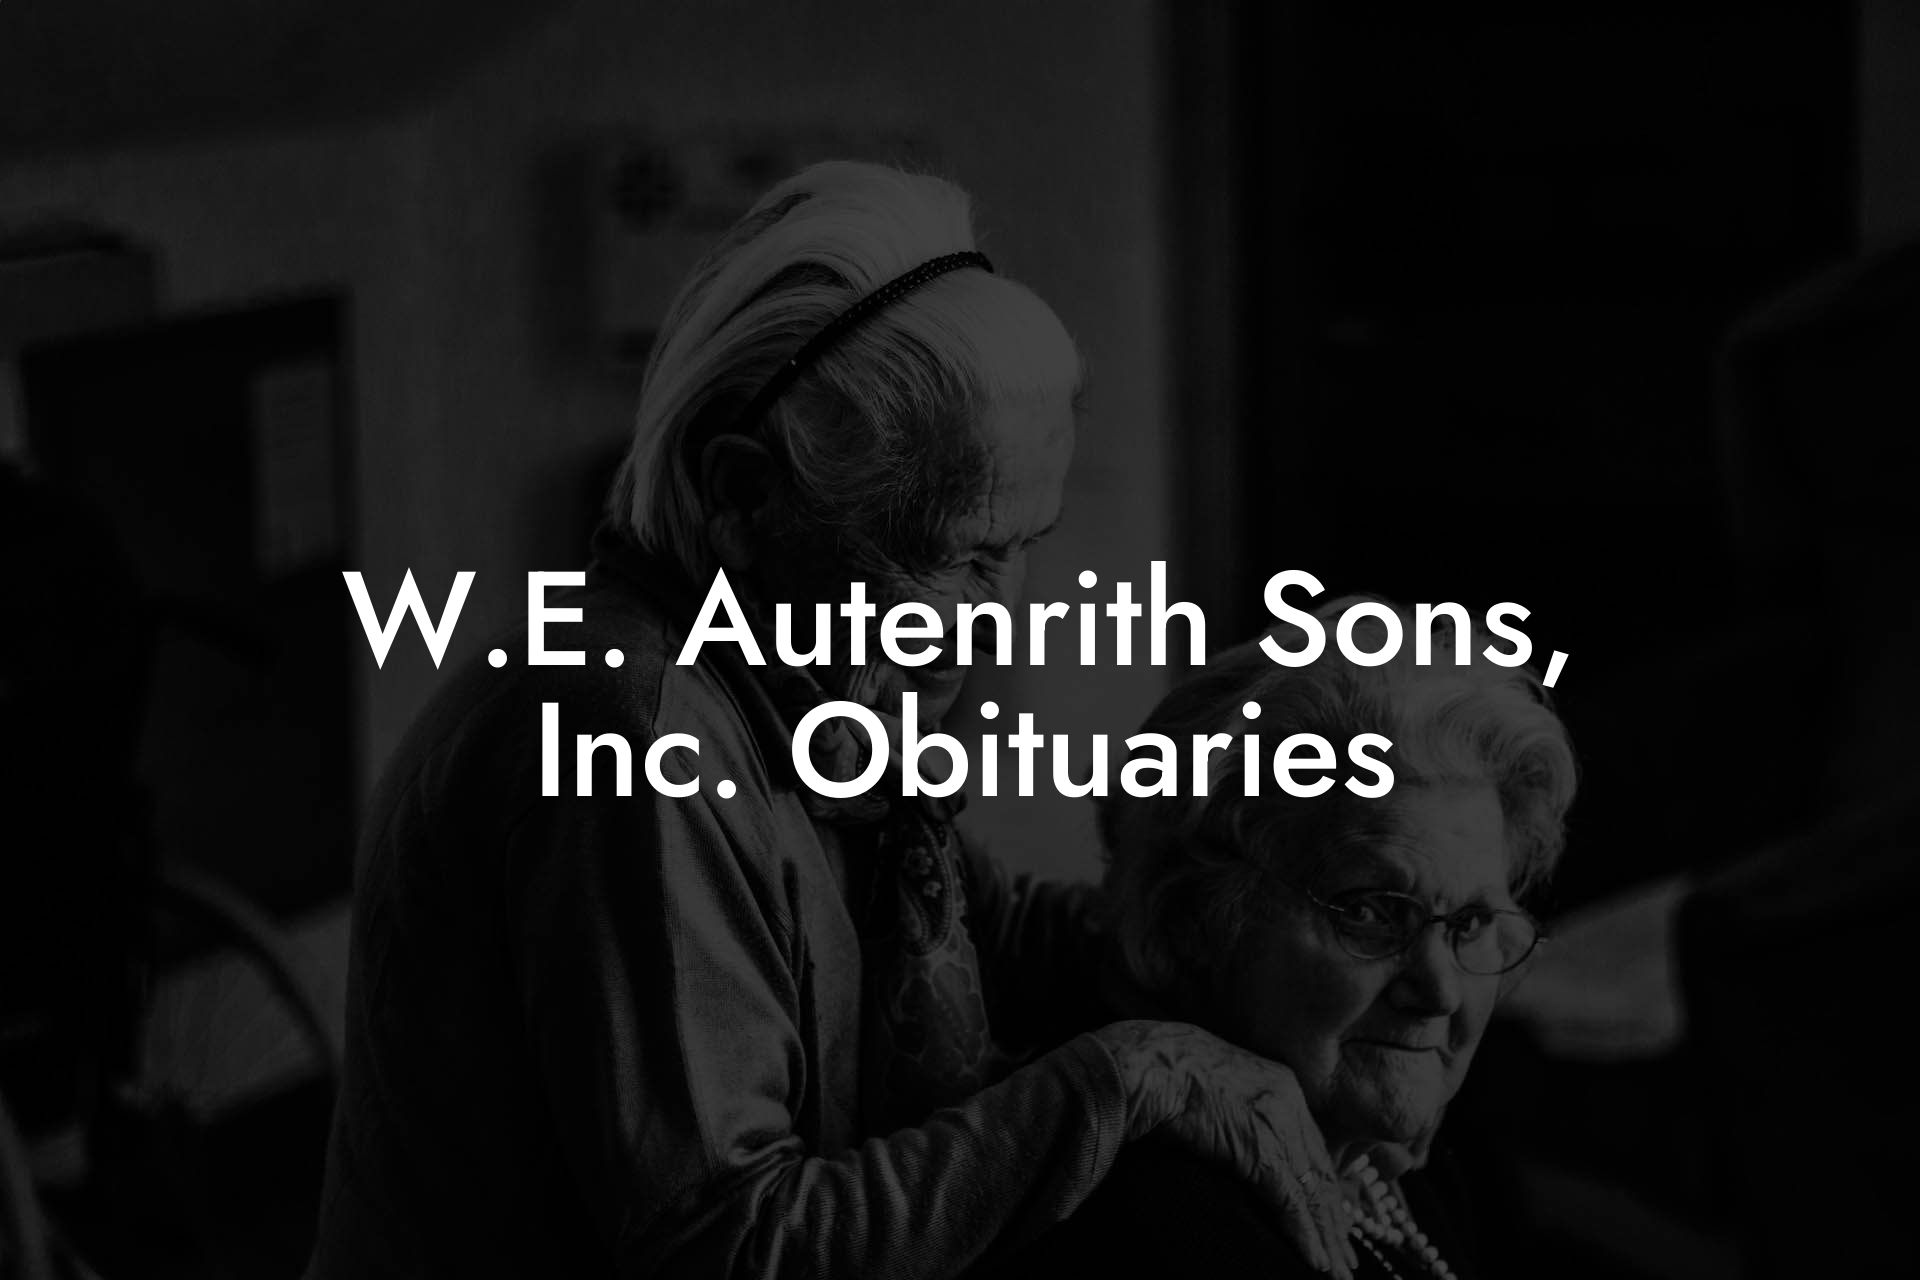 W.E. Autenrith Sons, Inc. Obituaries